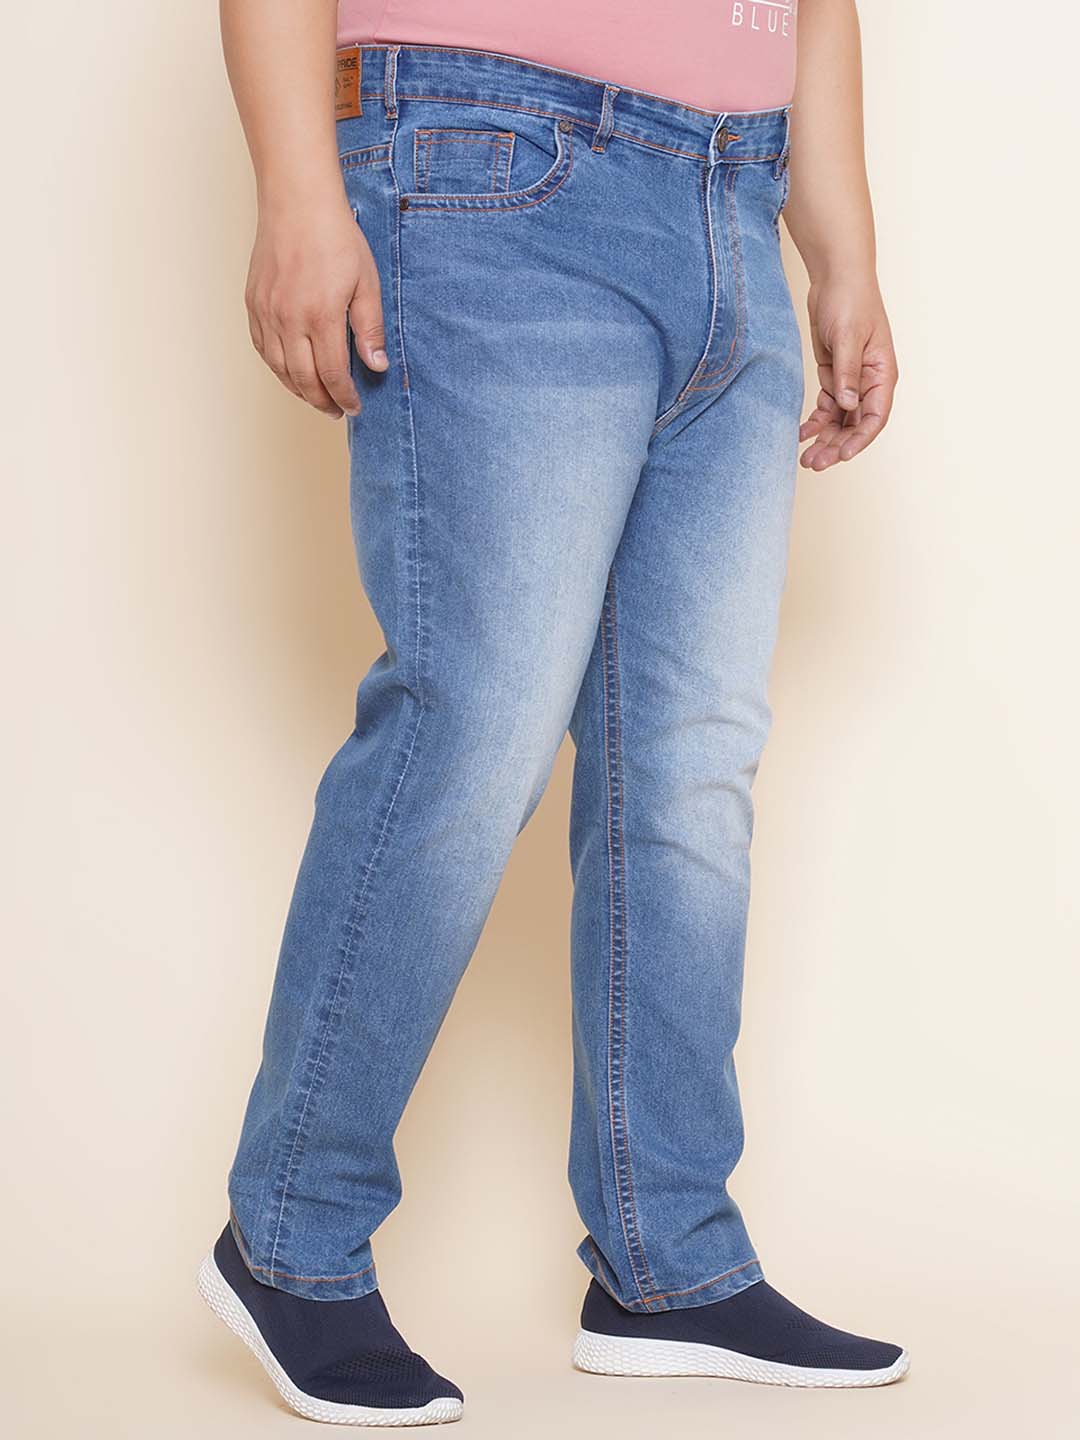 bottomwear/jeans/EJPJ25100/ejpj25100-4.jpg